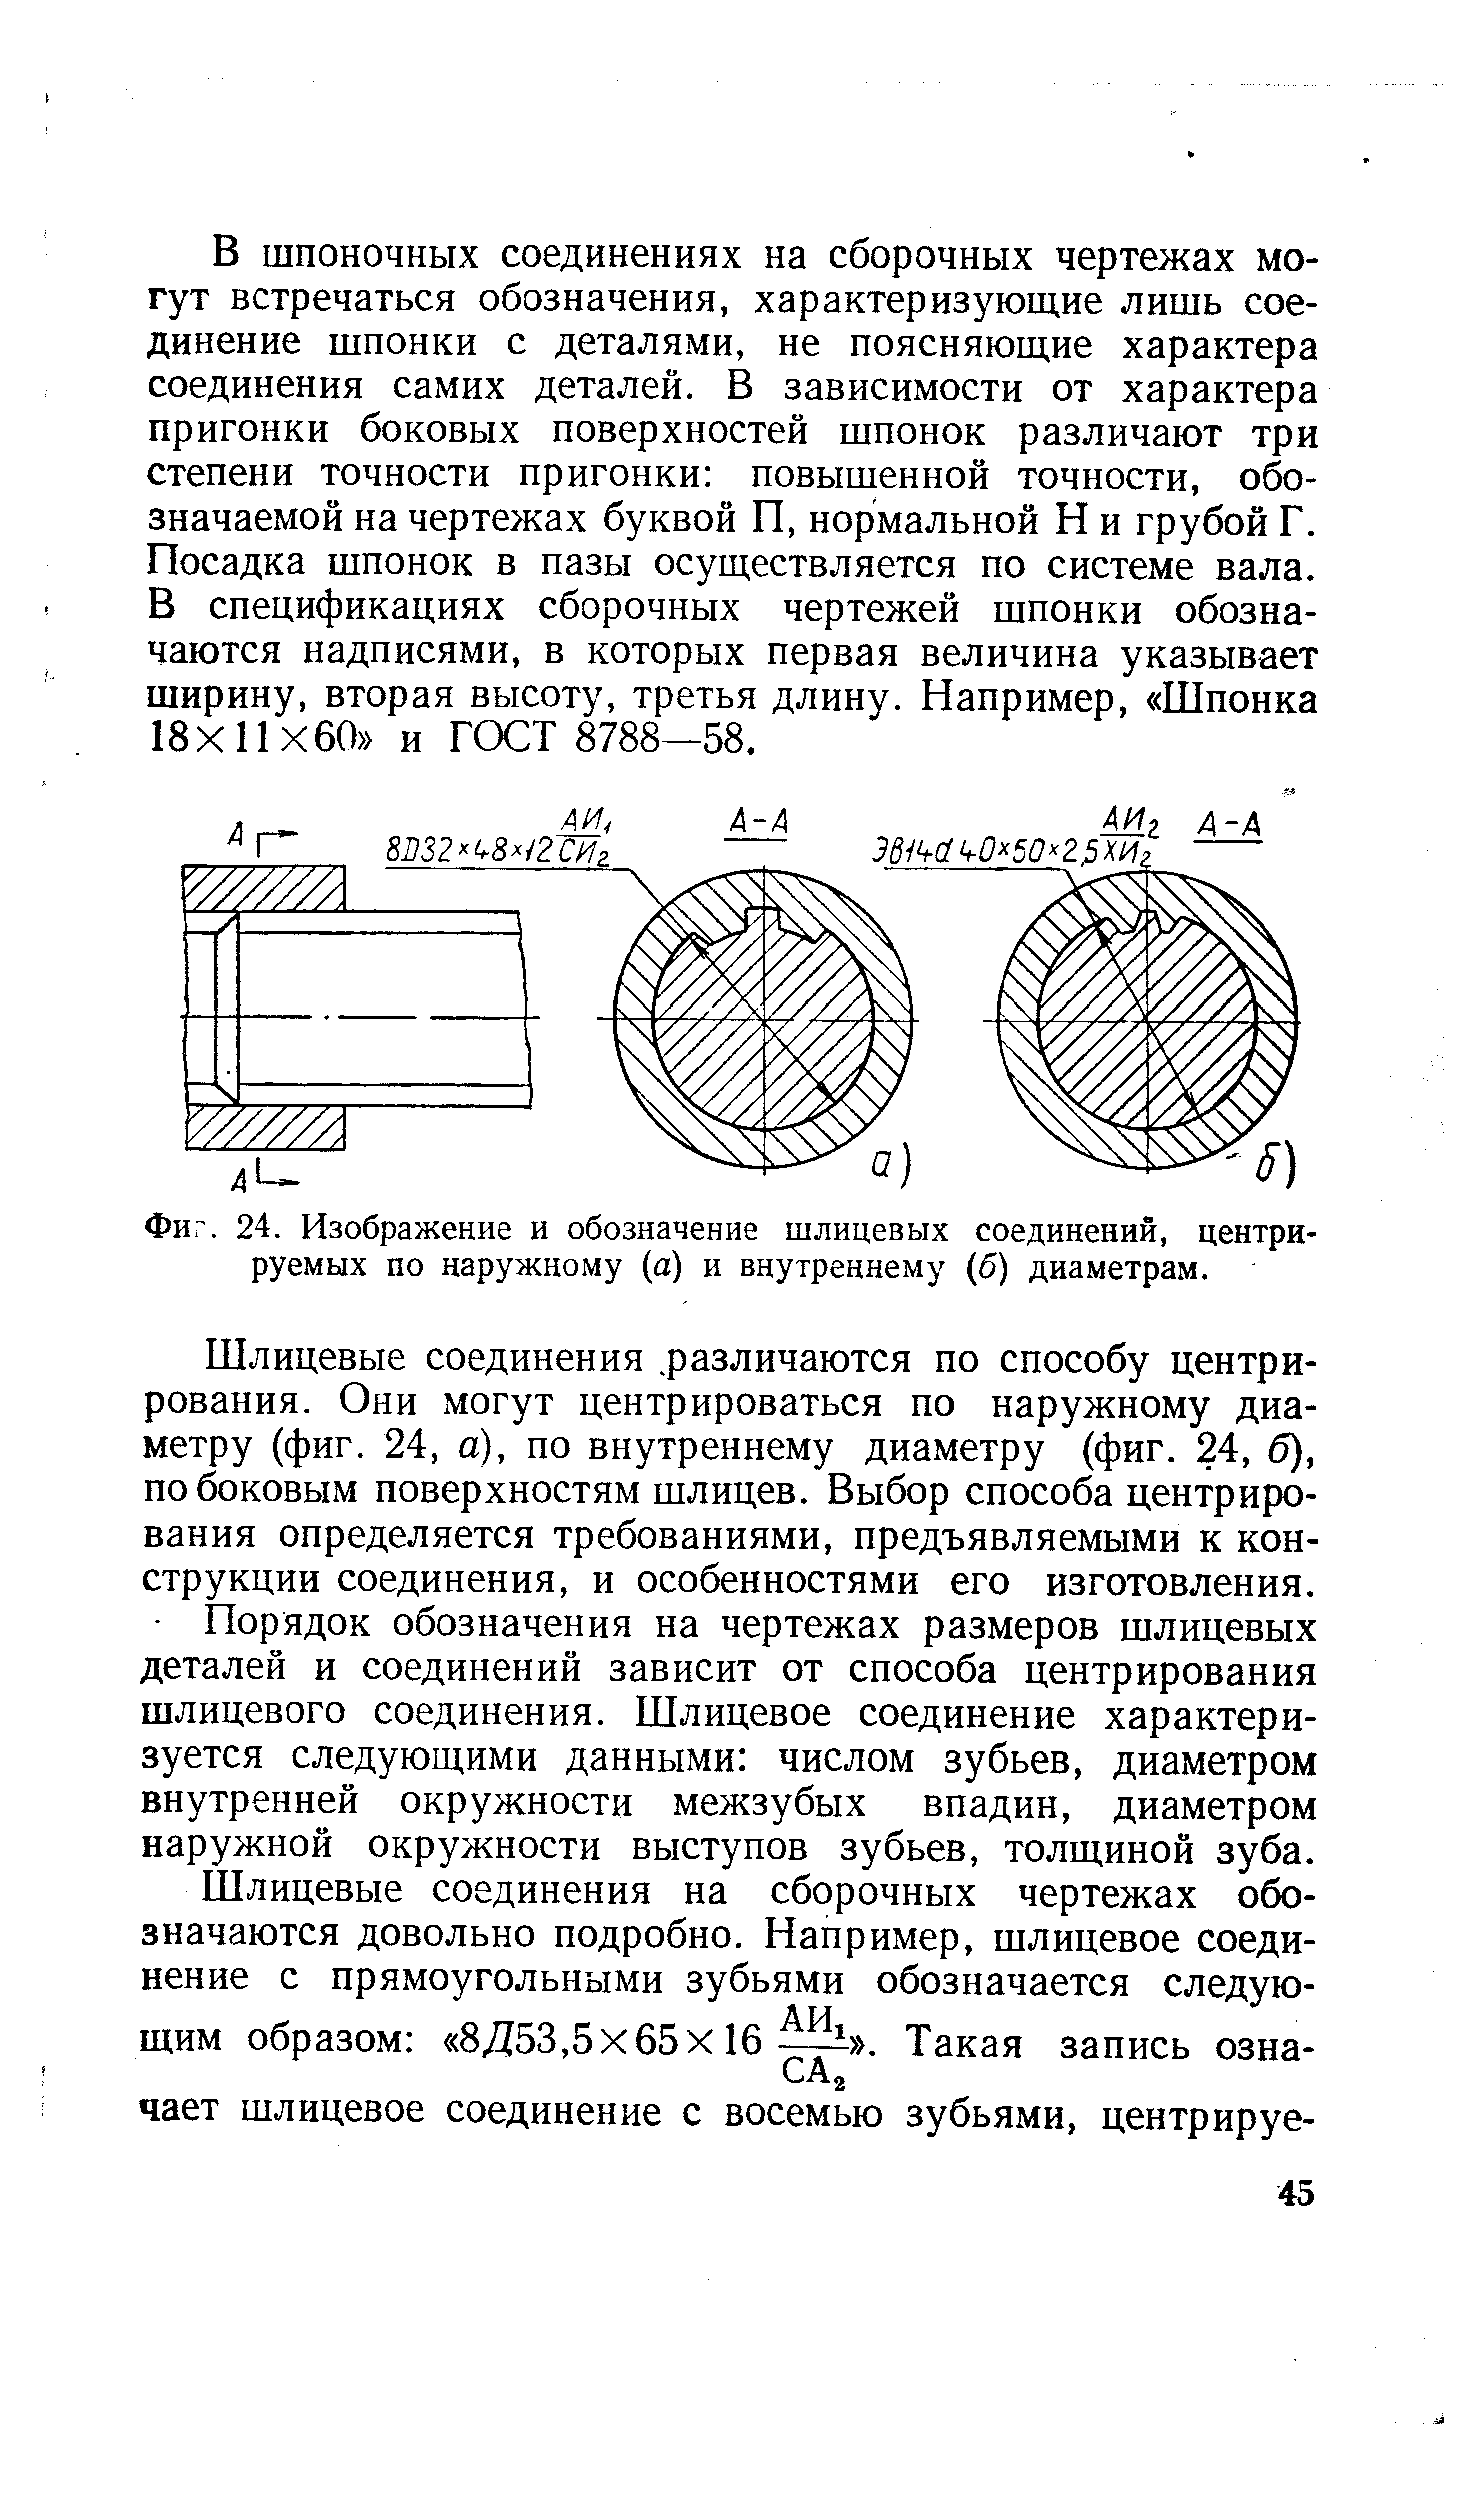 Фиг. 24. Изображение и обозначение шлицевых соединений, центрируемых по наружному (а) и внутреннему (б) диаметрам.
